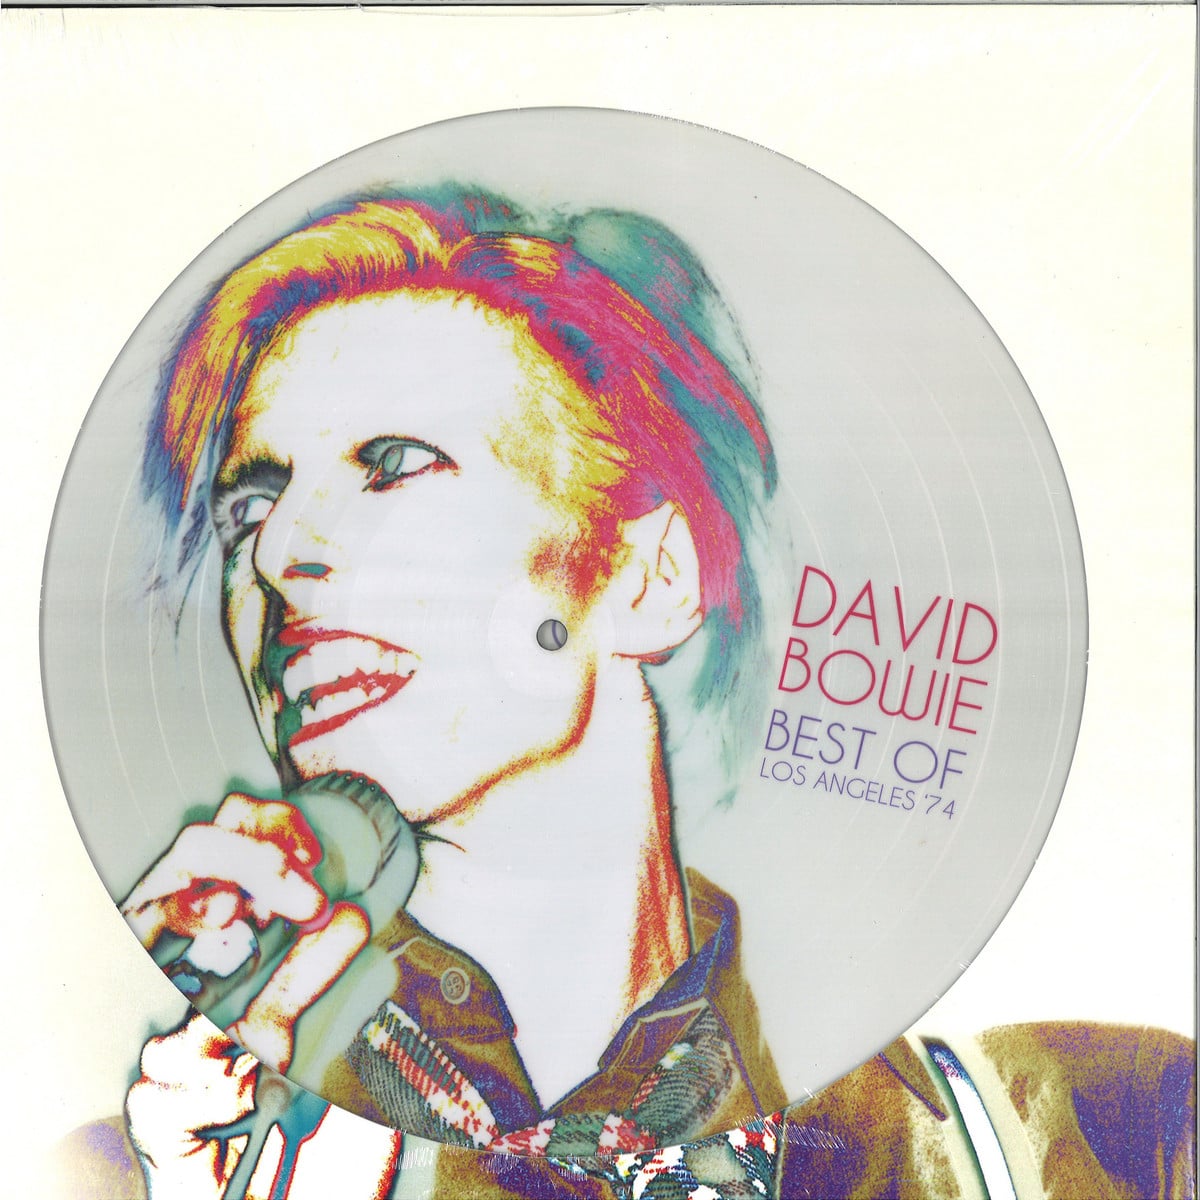 david bowie Best Of Los Angeles '74 picture disc vinyl lp